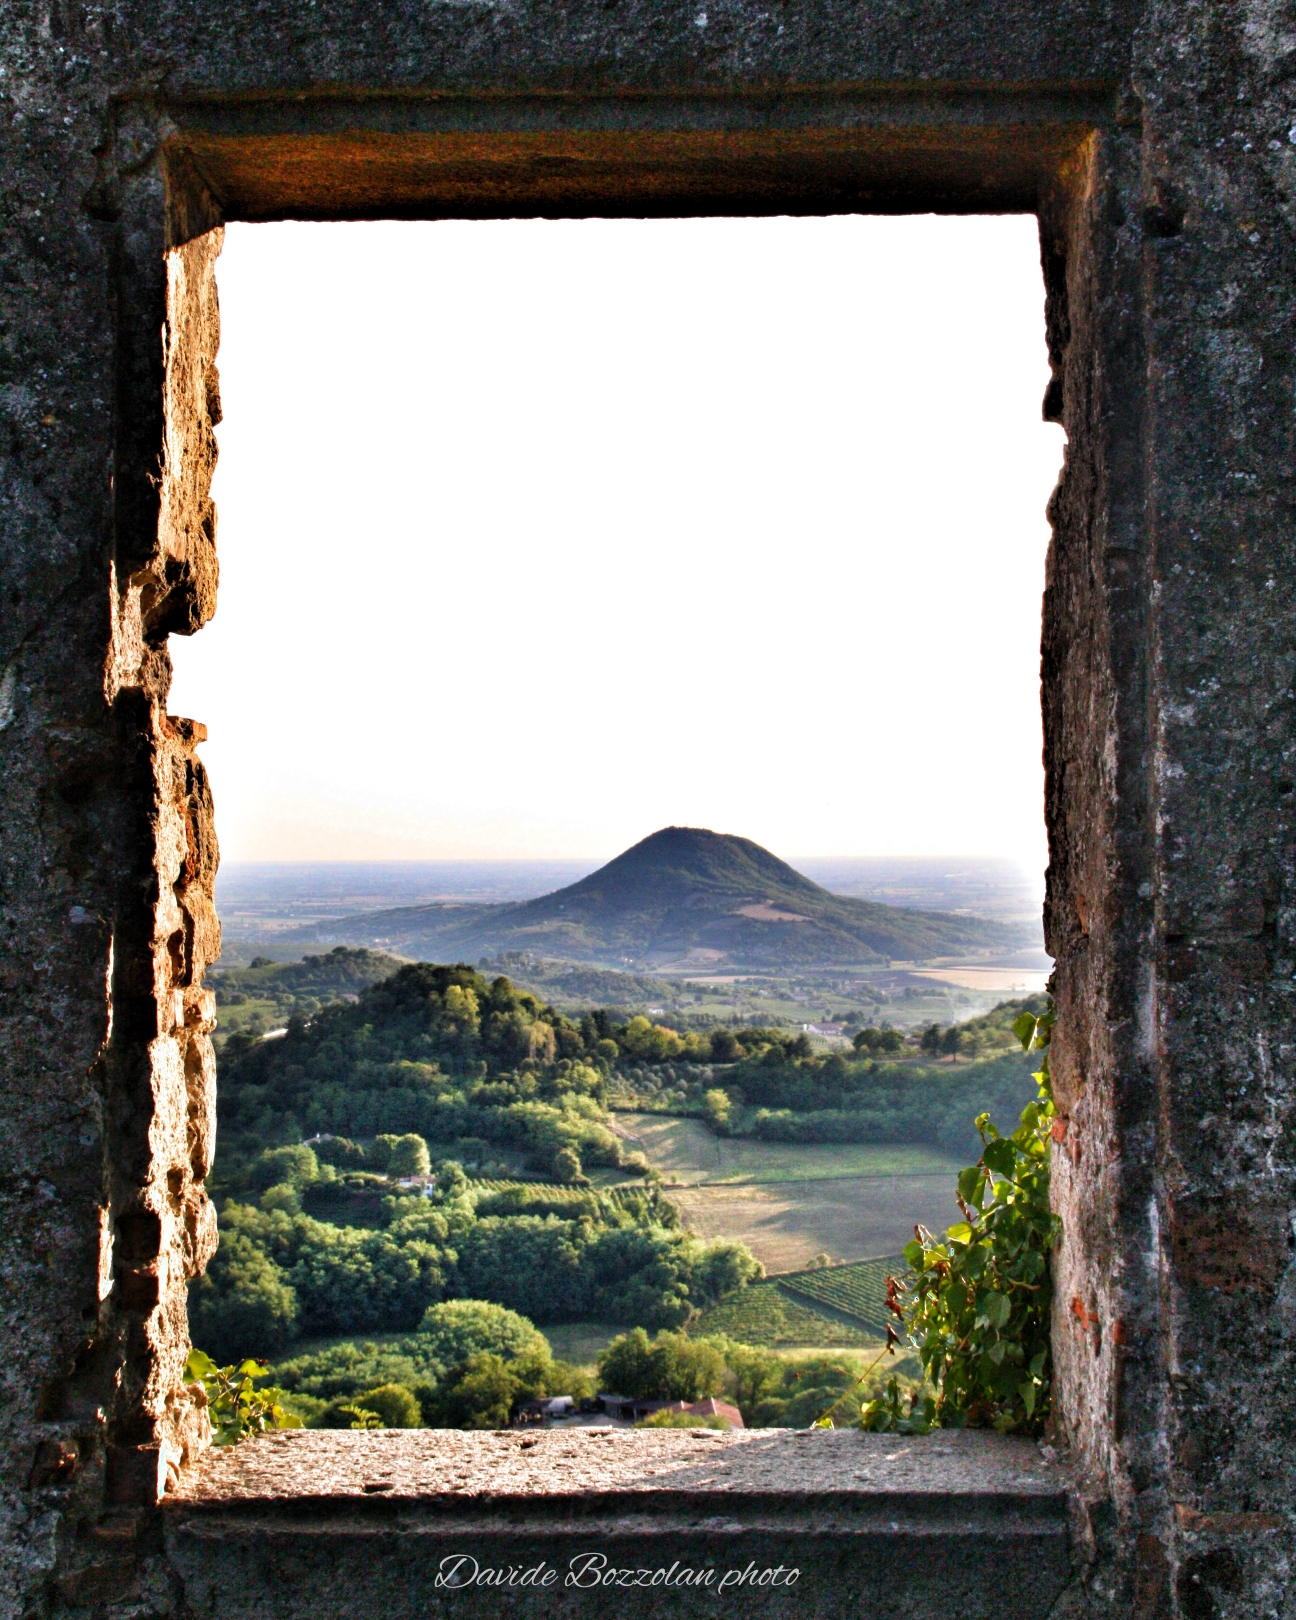 finestra delle rovine di rocca Pendice colli Euganei...